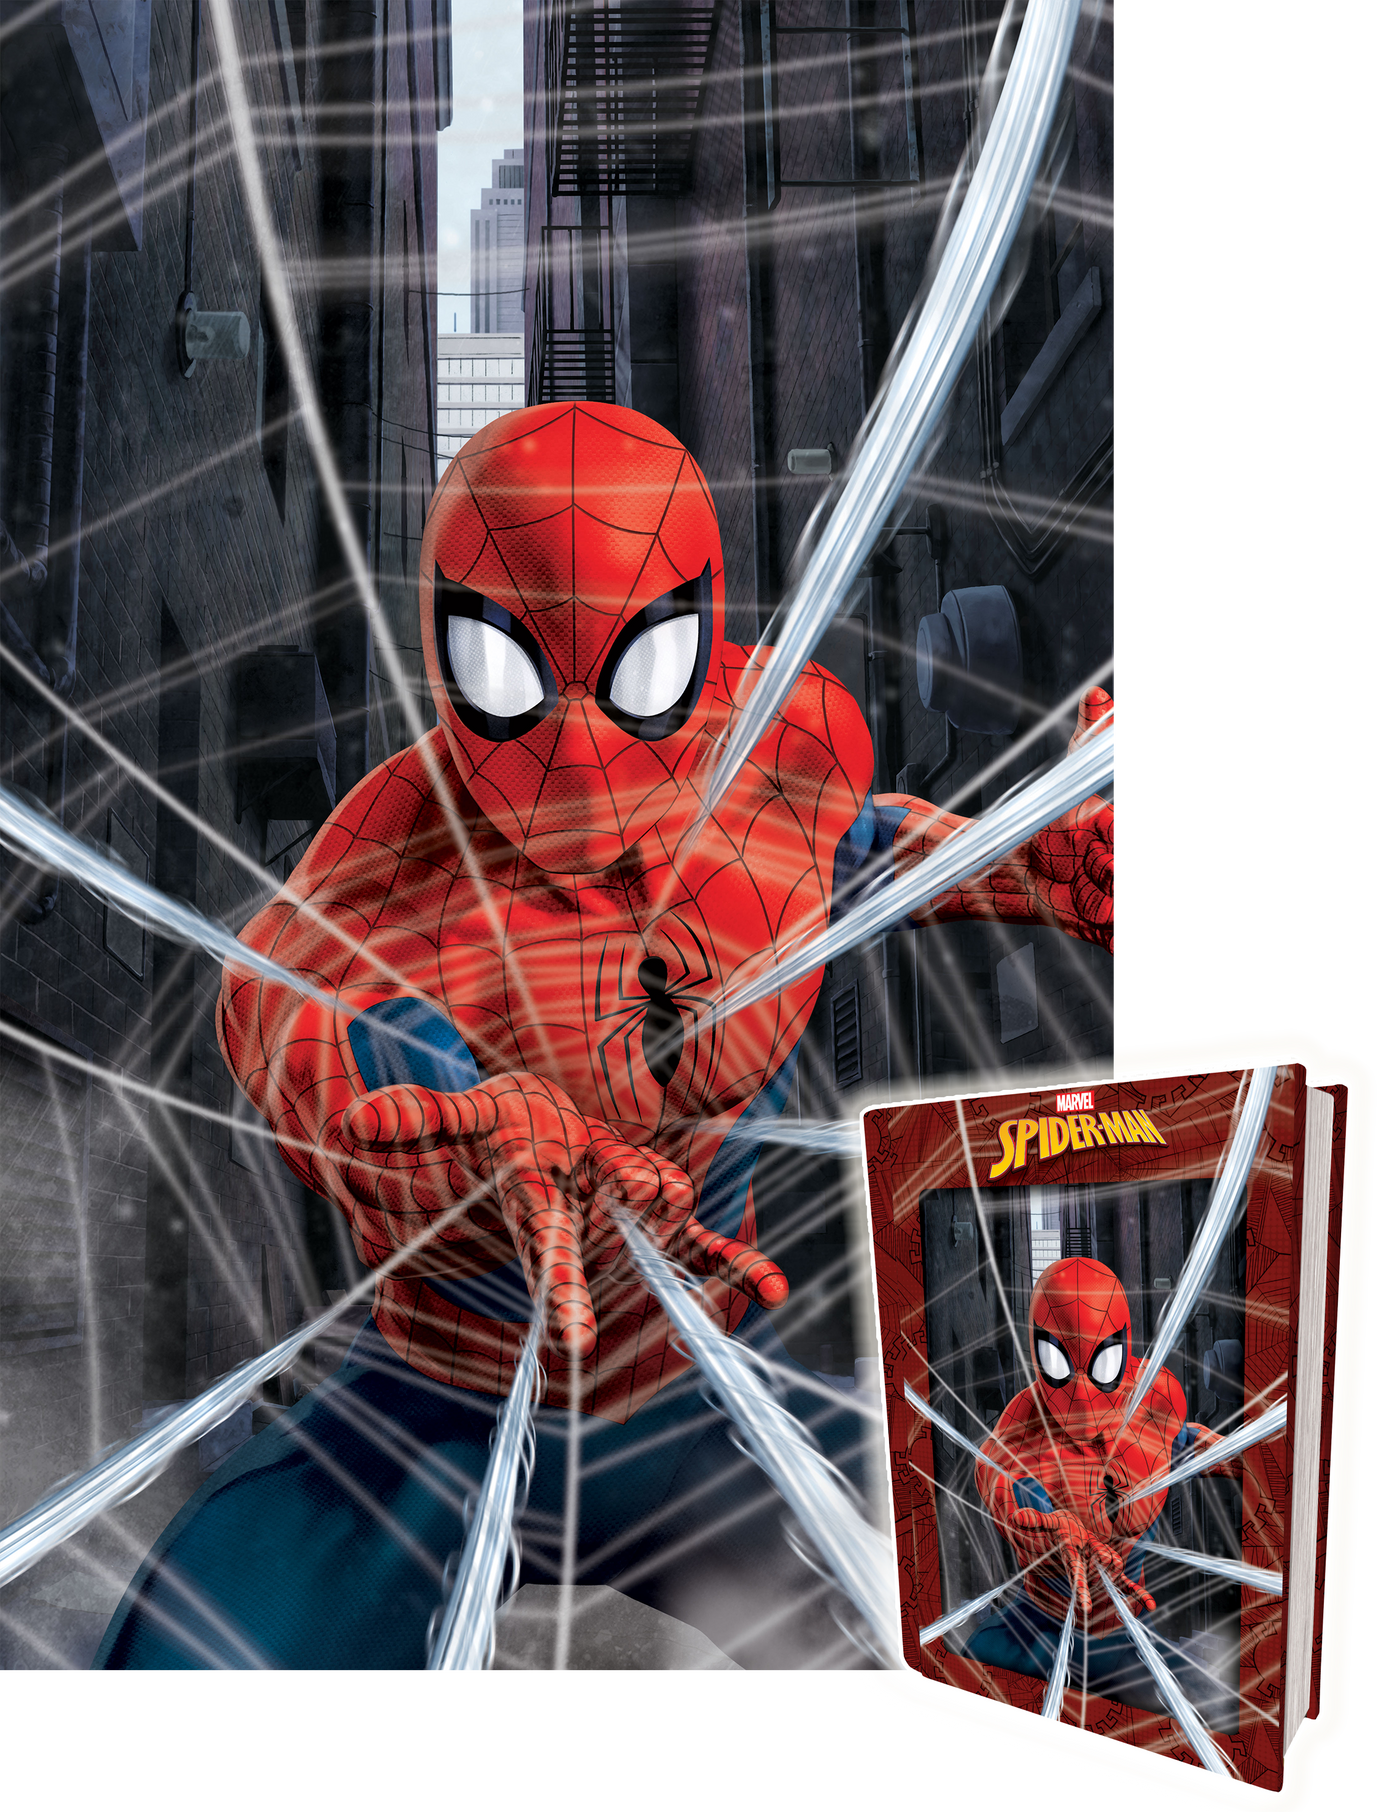 Puzzle Prime 3D – Spiderman 300pcs